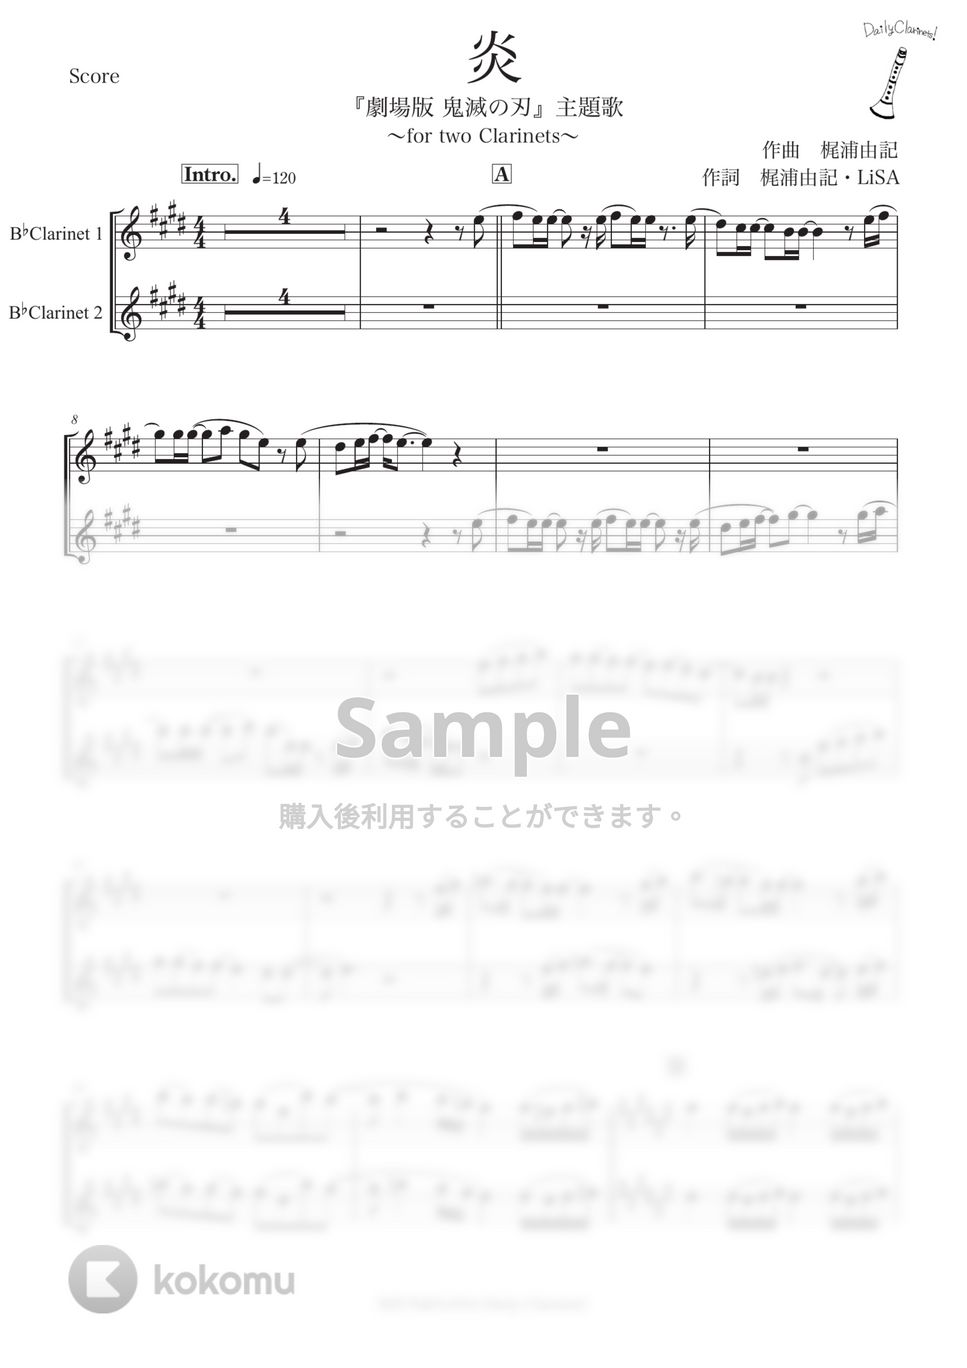 LiSA - 炎 (クラリネット二重奏) by SHUN&NANA Daily Clarinets!